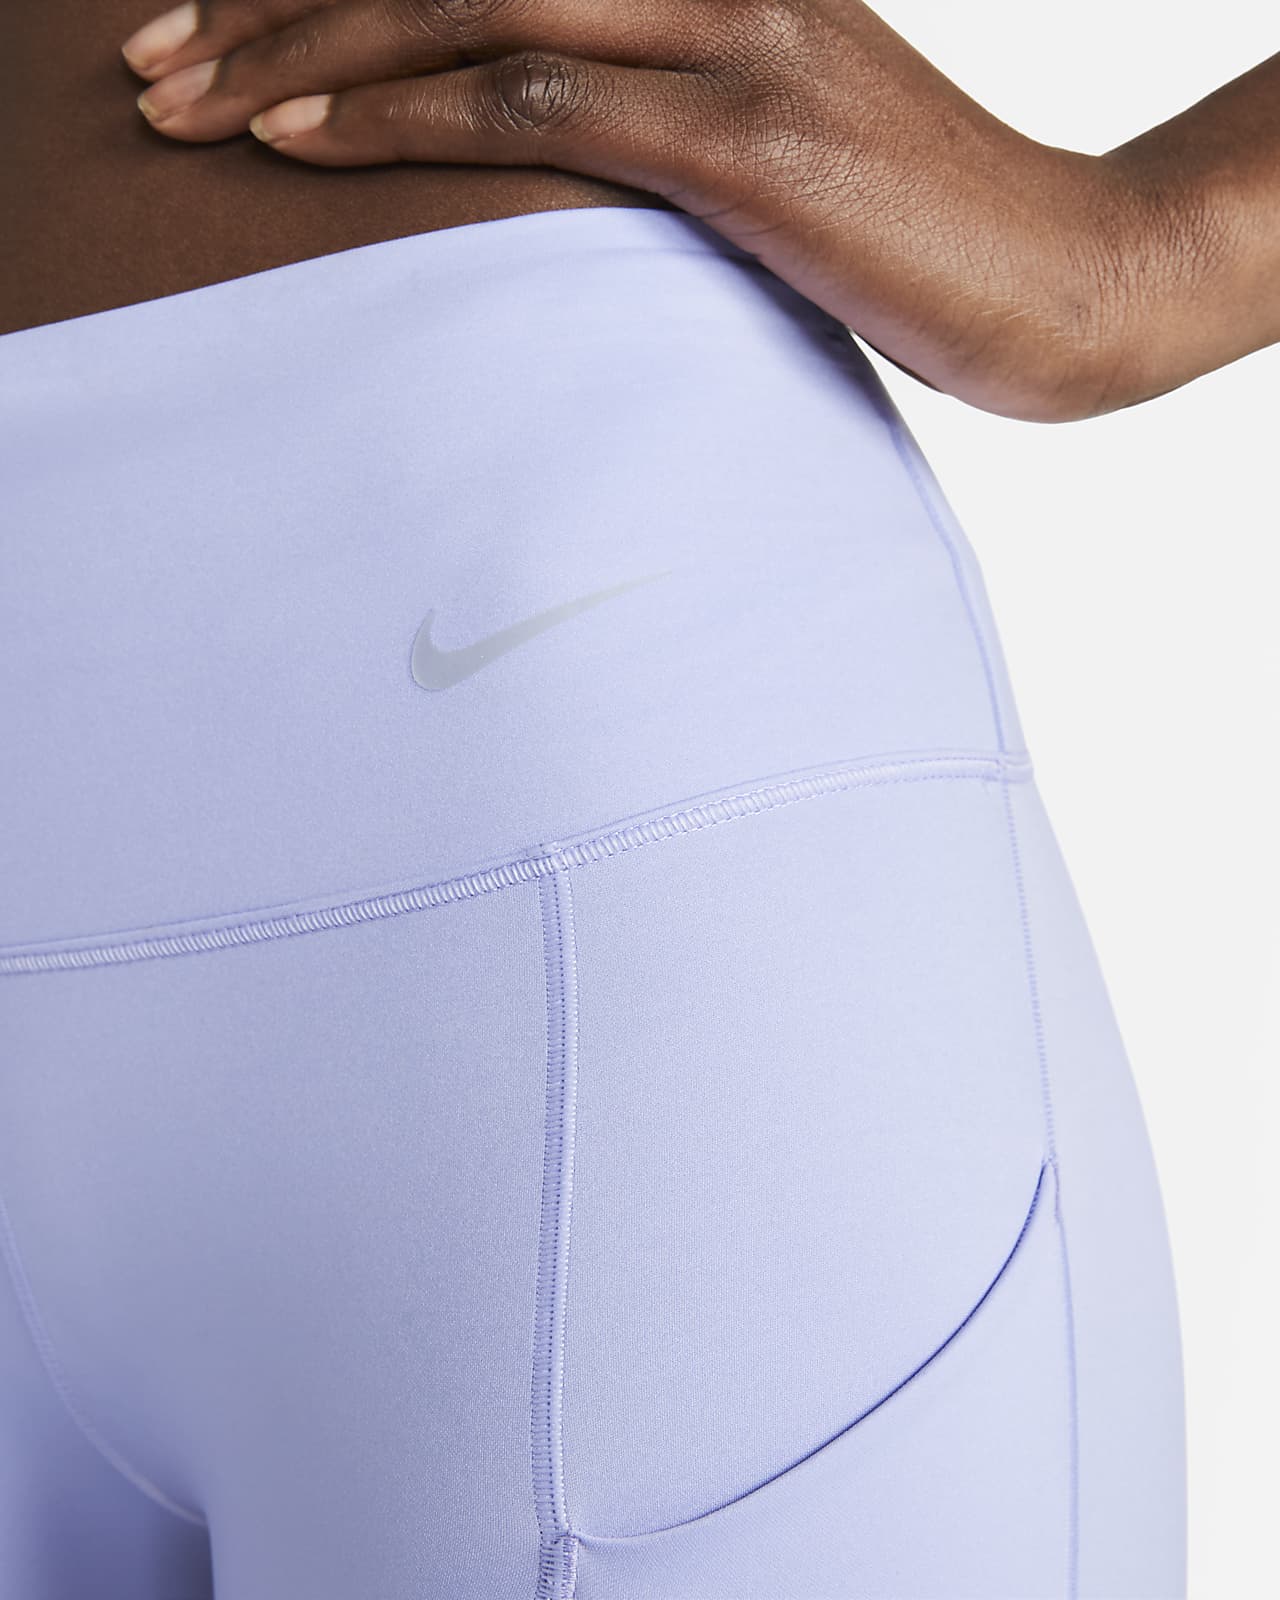 Nike / Women's Run Air Dri-FIT Mid-Rise 7/8 Leggings